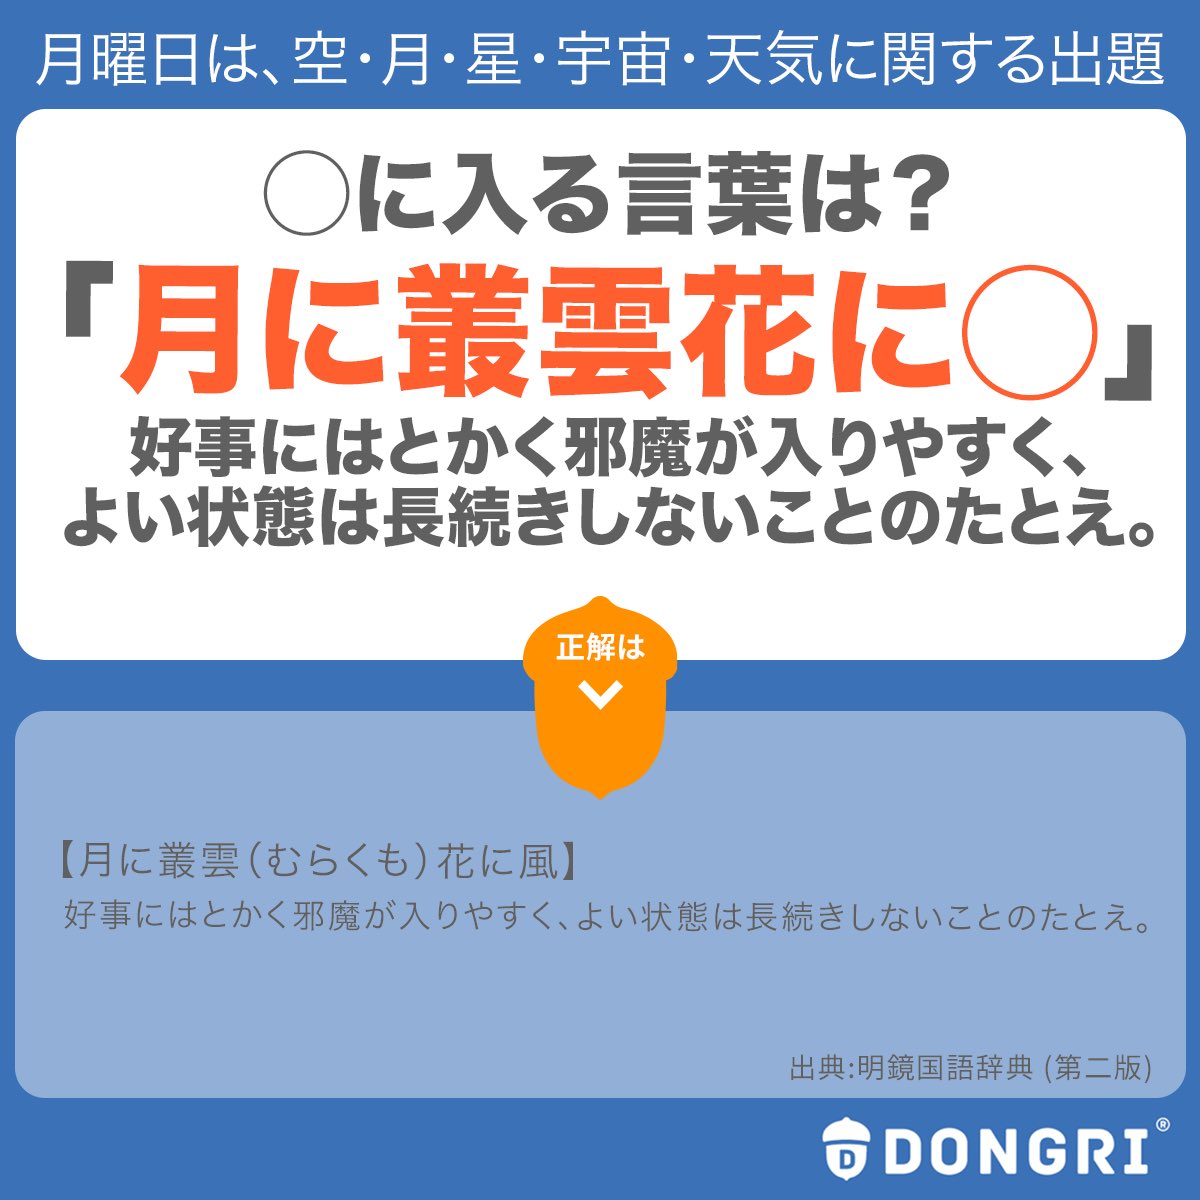 ট ইট র 辞書アプリ Dongri 日本語って美しく ときに儚いですよね さて 今日は明鏡国語辞典から 月 に纏わることわざから出題です に入る言葉はなんでしょう 叢雲 ことわざ 月 日本語 国語辞典 明鏡国語辞典 アプリ Dongri